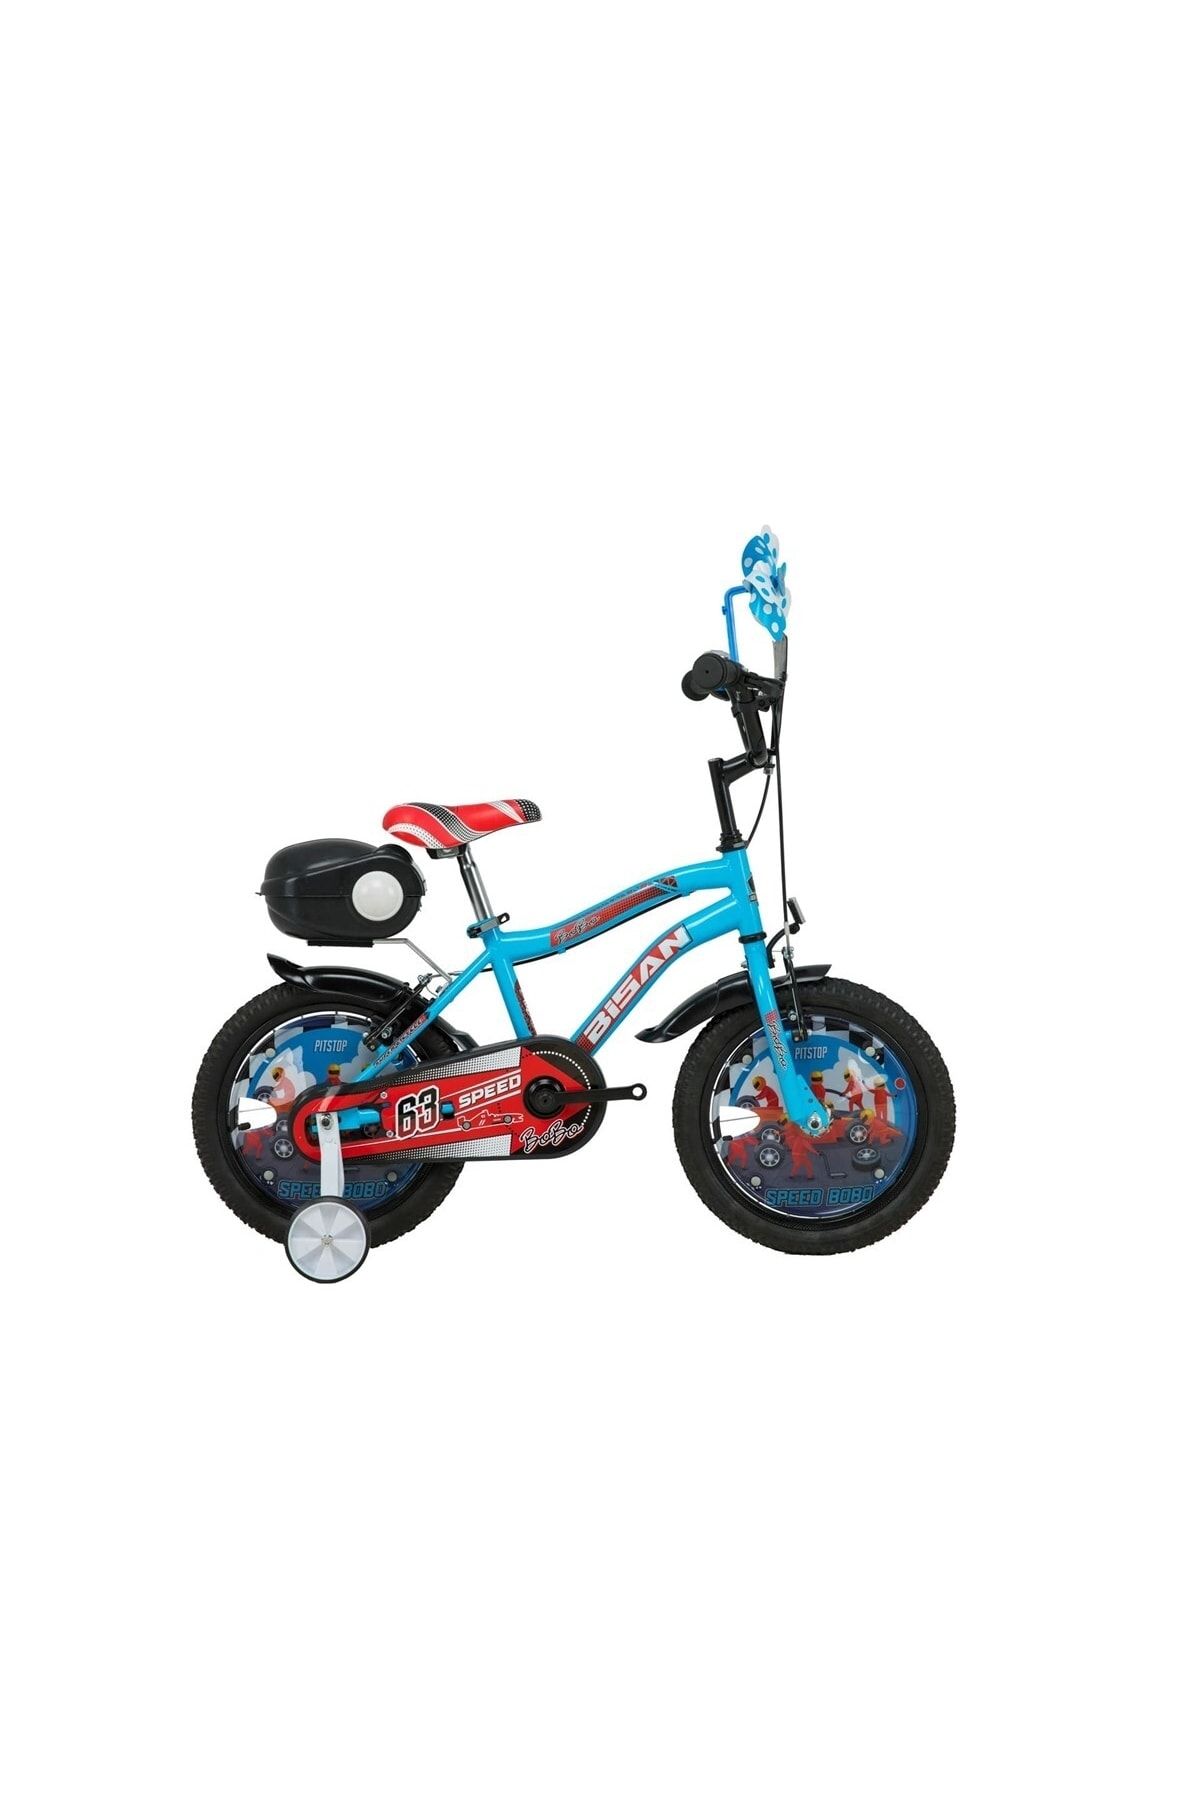 Bisan Kds 2200 Bobo 16 Jant Çocuk Bisikleti Yeni Model Mavi-turuncu